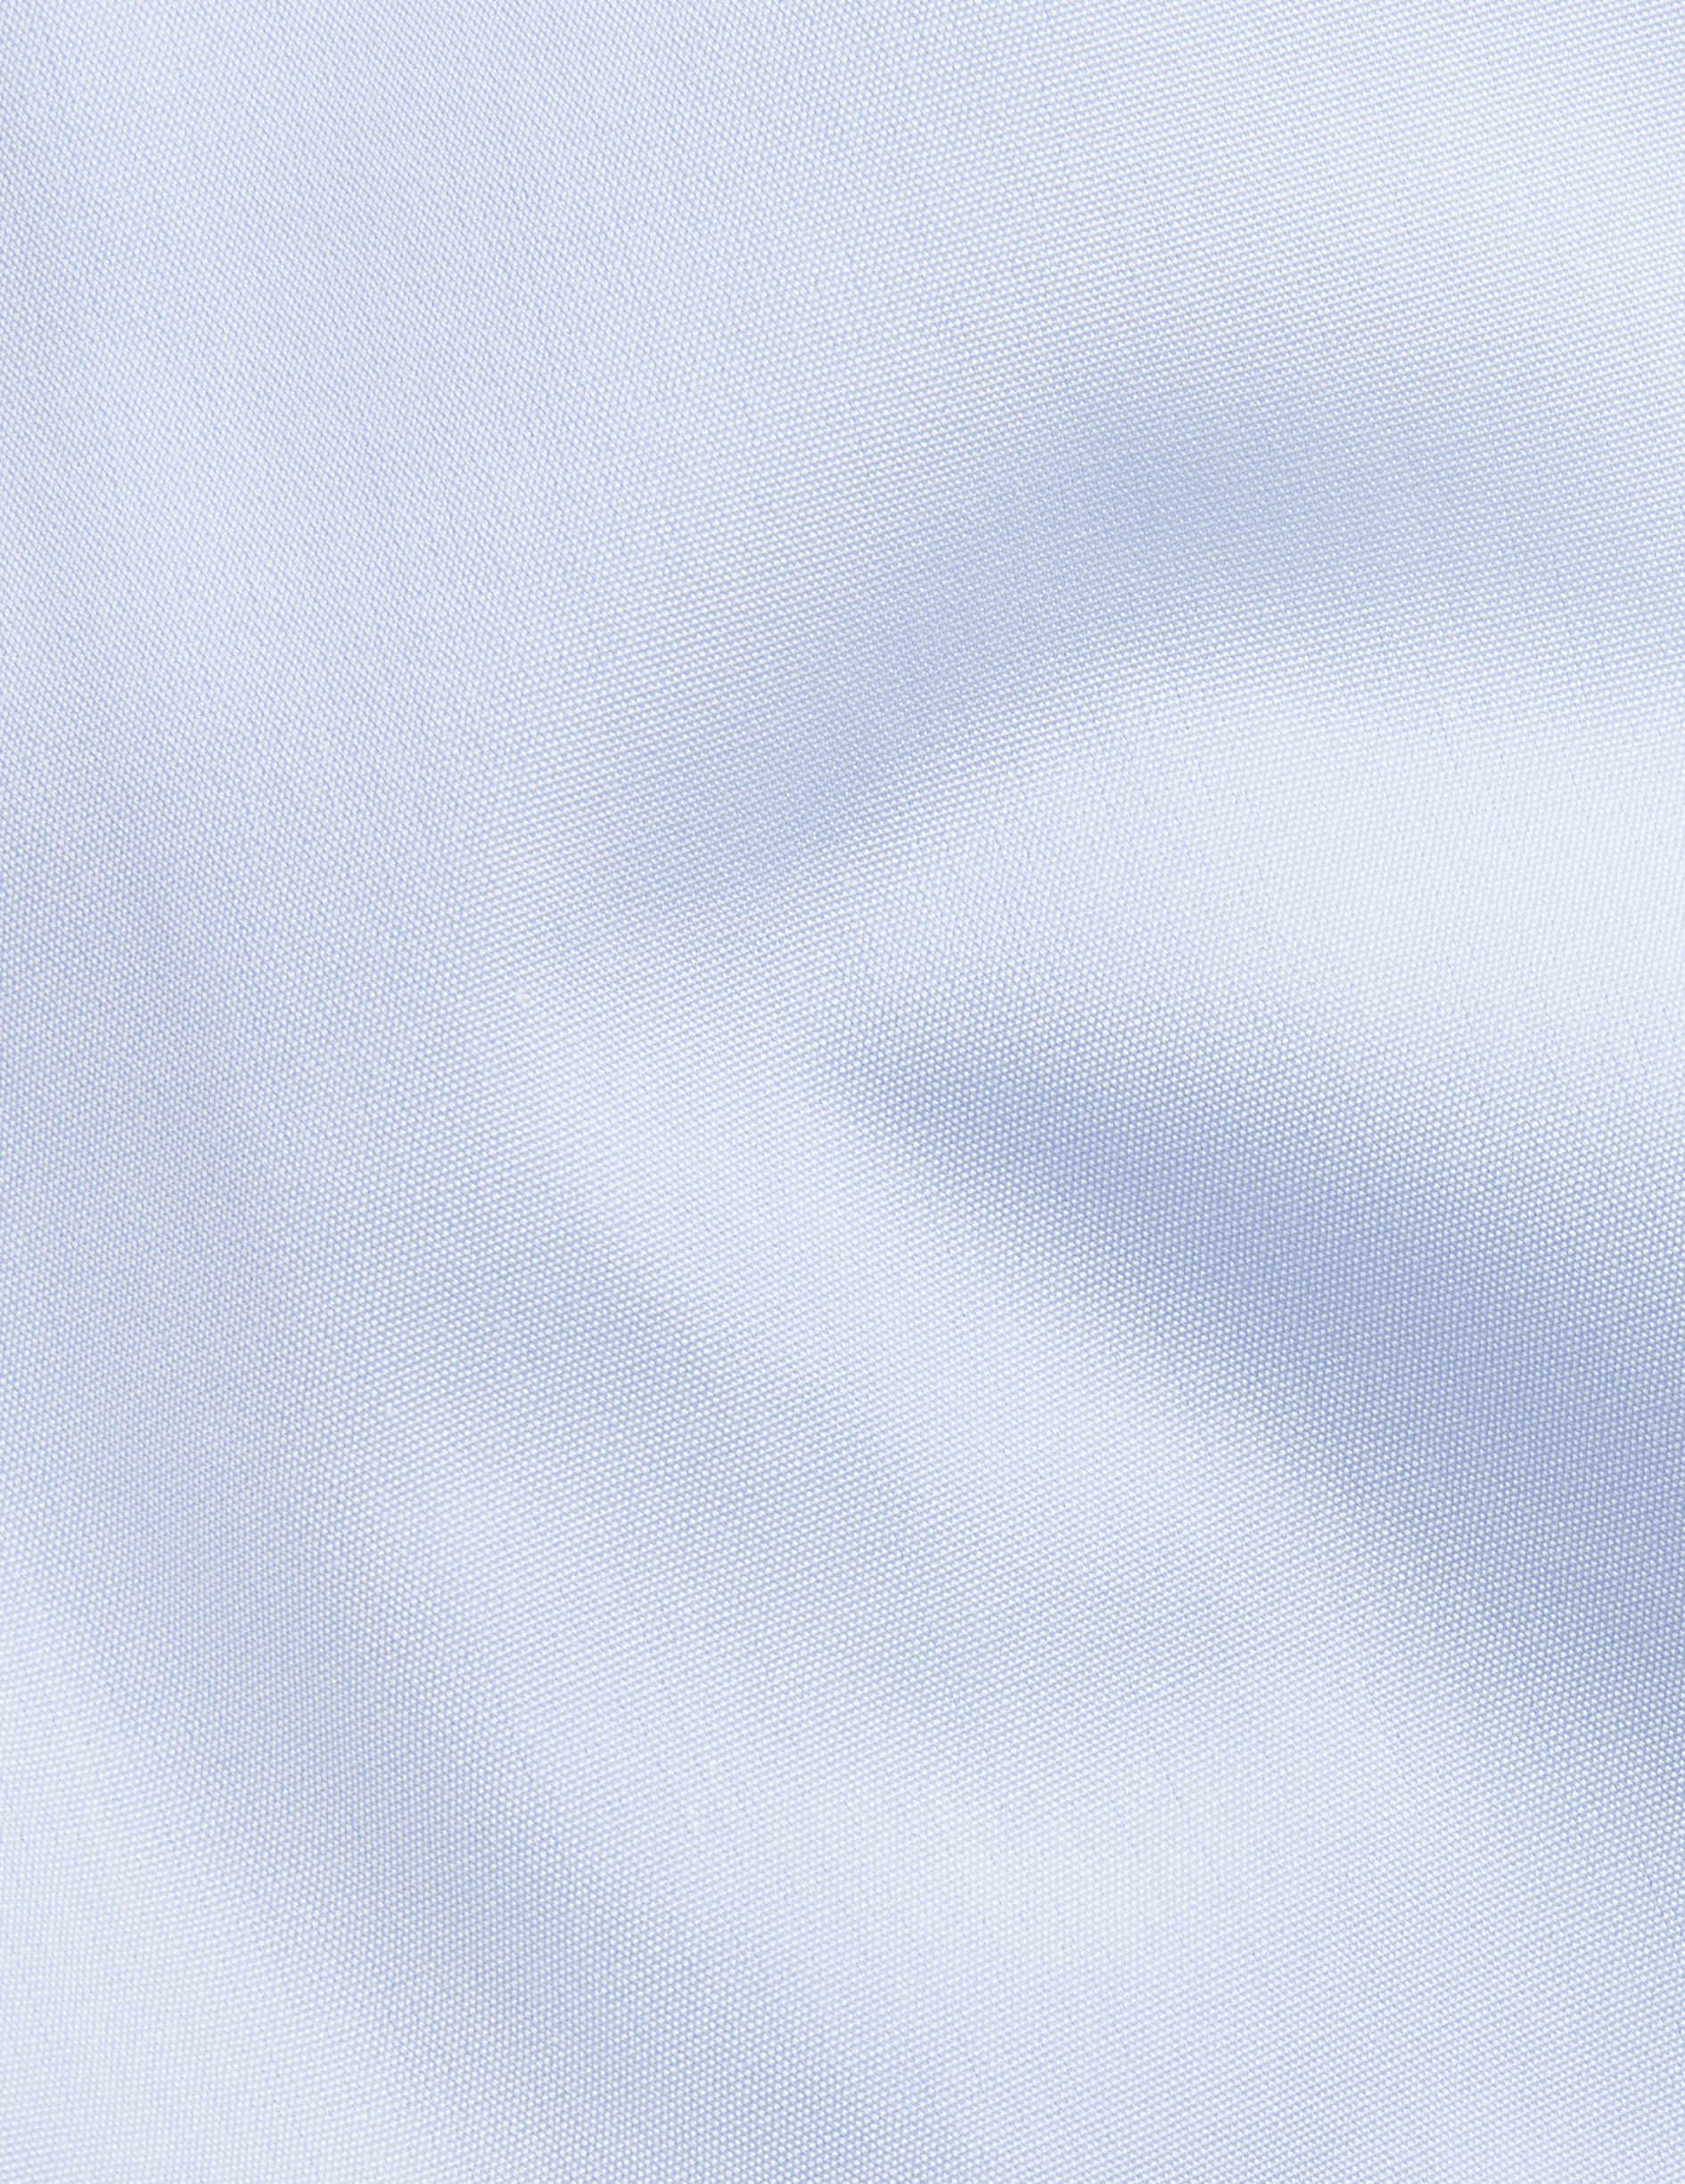 Chemise Semi-ajustée infroissable bleue - Popeline - Col Figaret